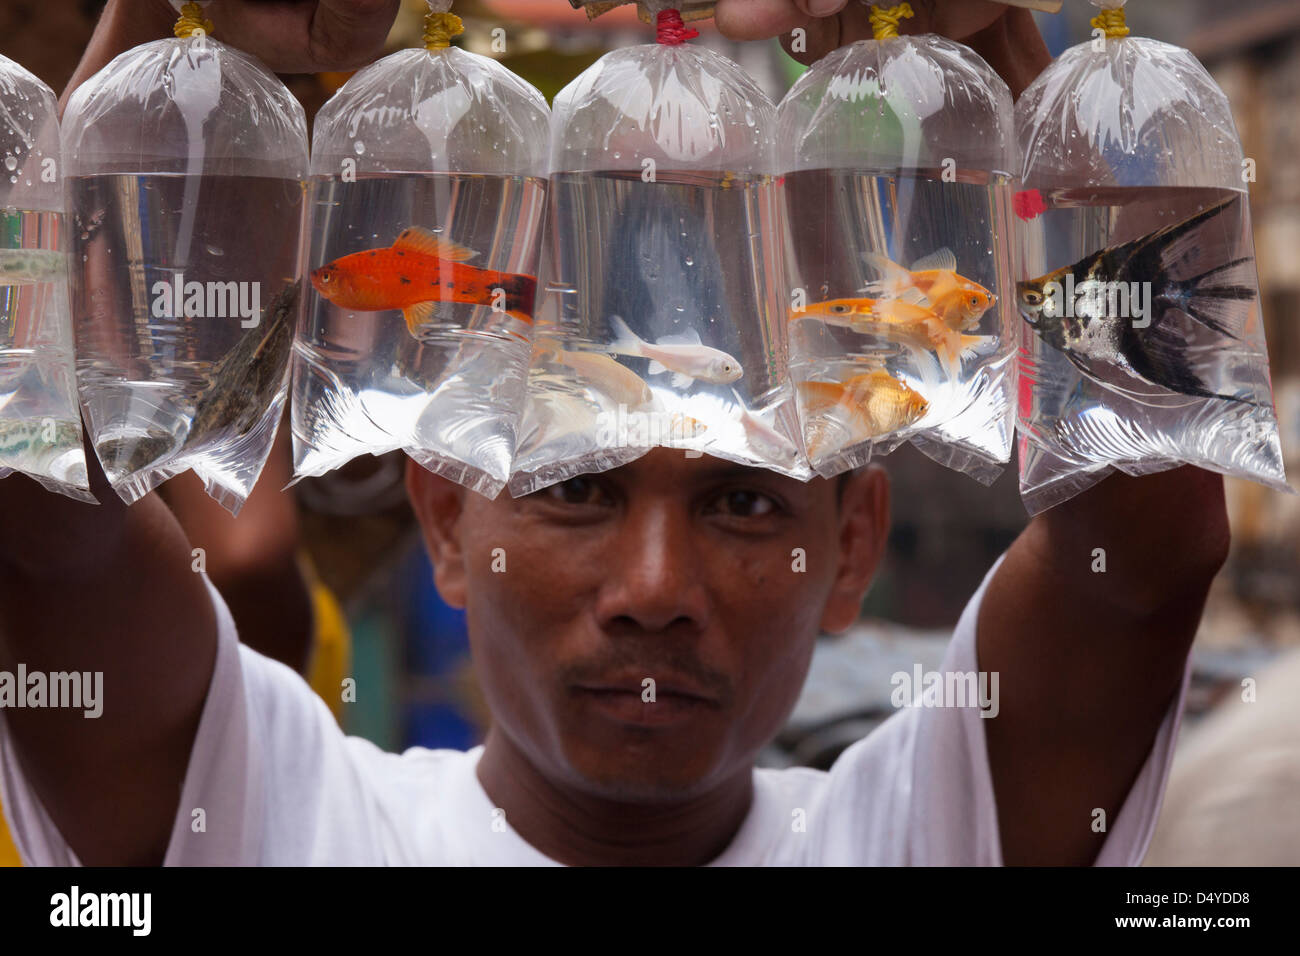 Vendeur de poisson montrant ses marchandises, Yangon, Myanmar Banque D'Images